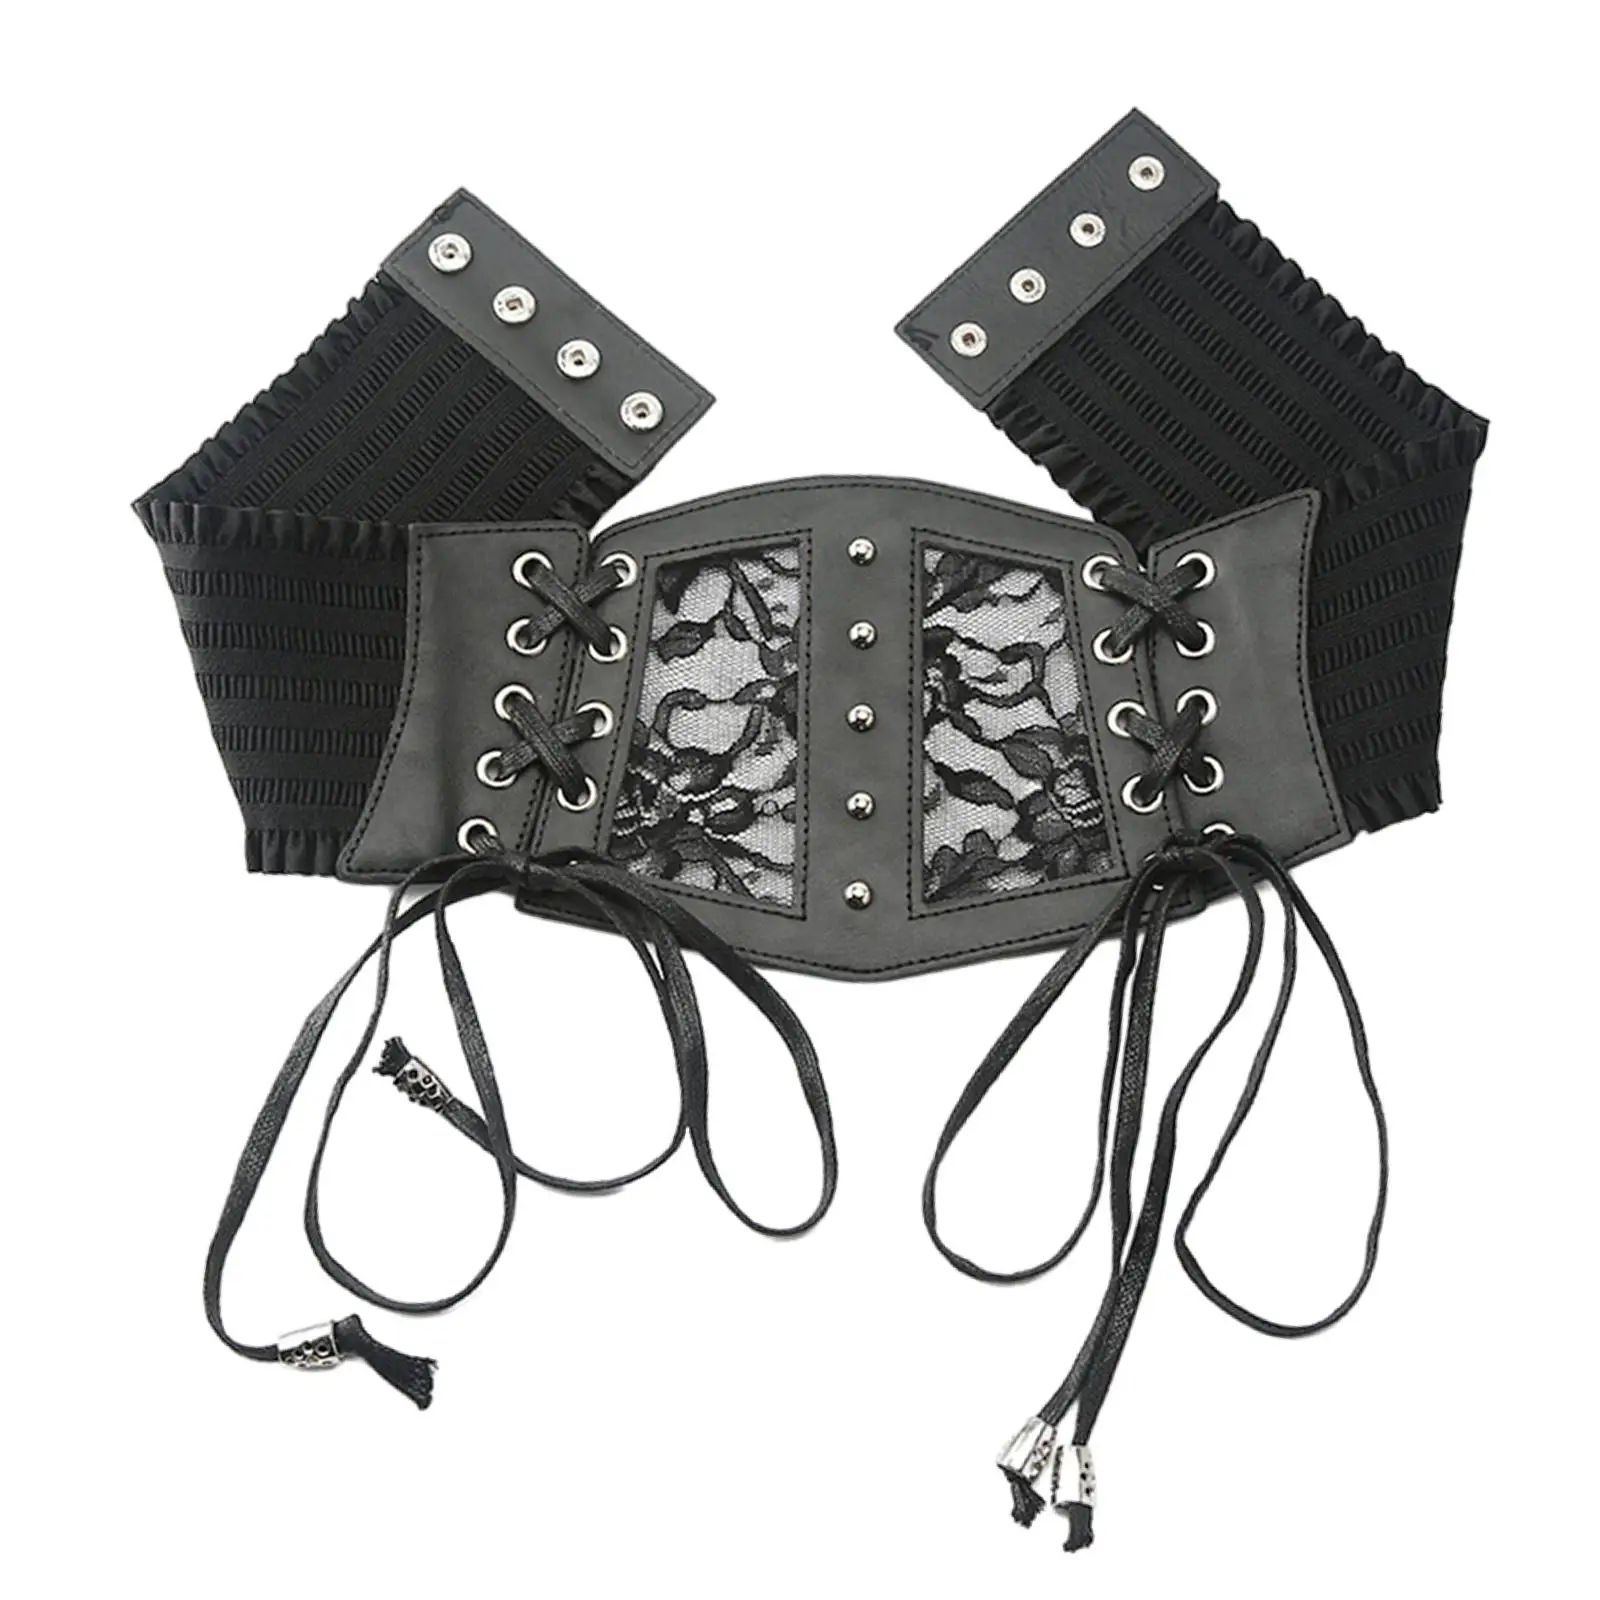 belts for dresses Women's Wide Waist Belt, Elastic Dress, Women's Stretch Corset, transparent belt